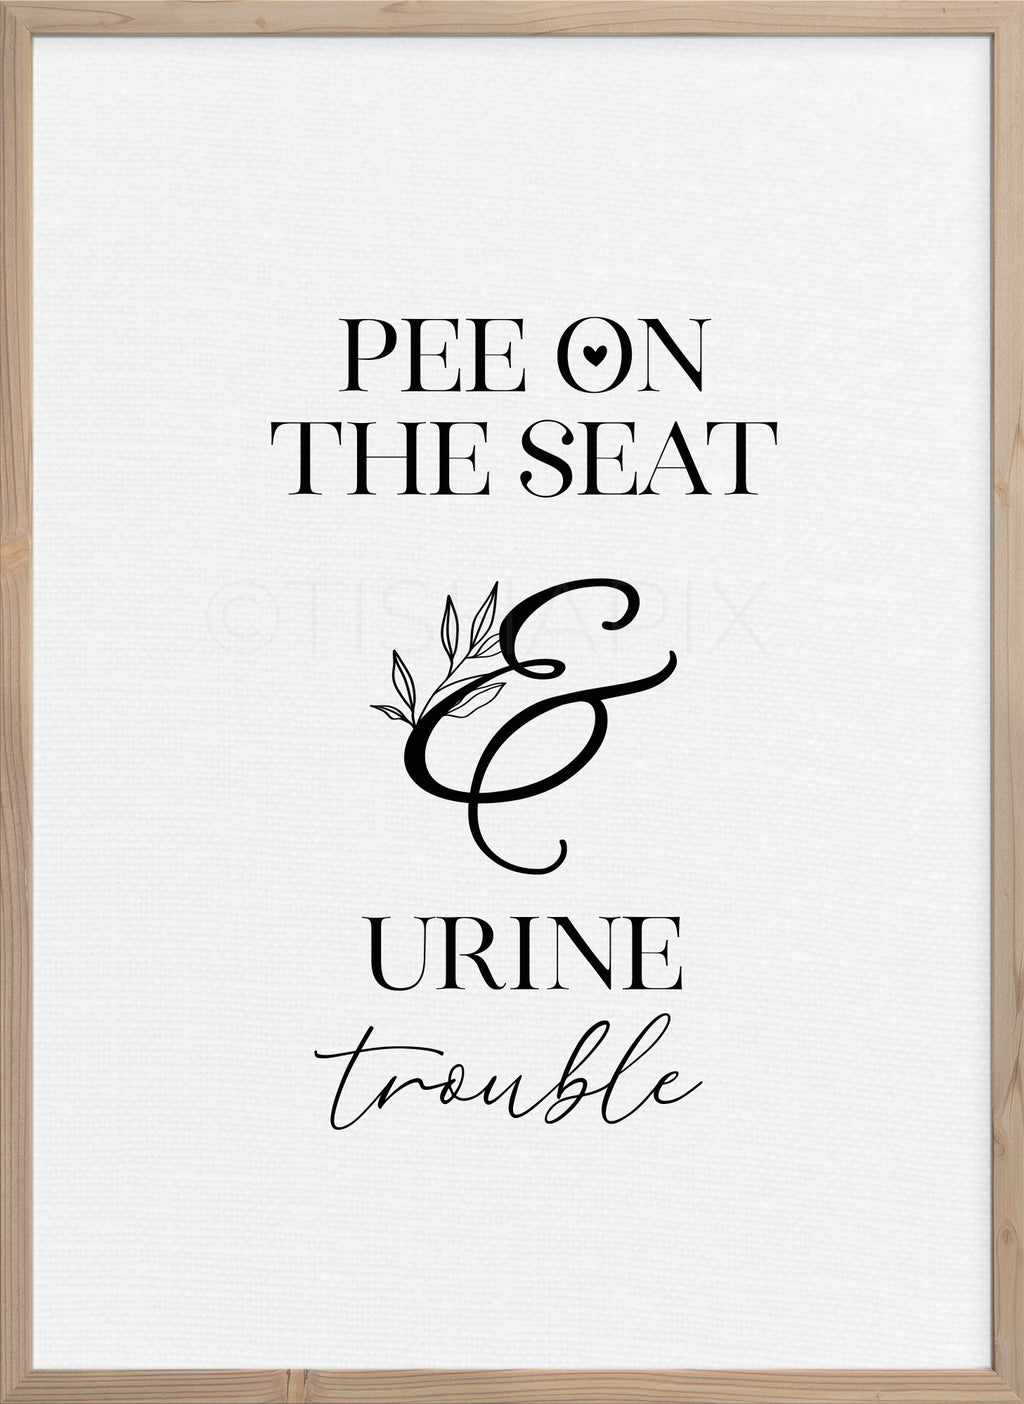 Urine Trouble